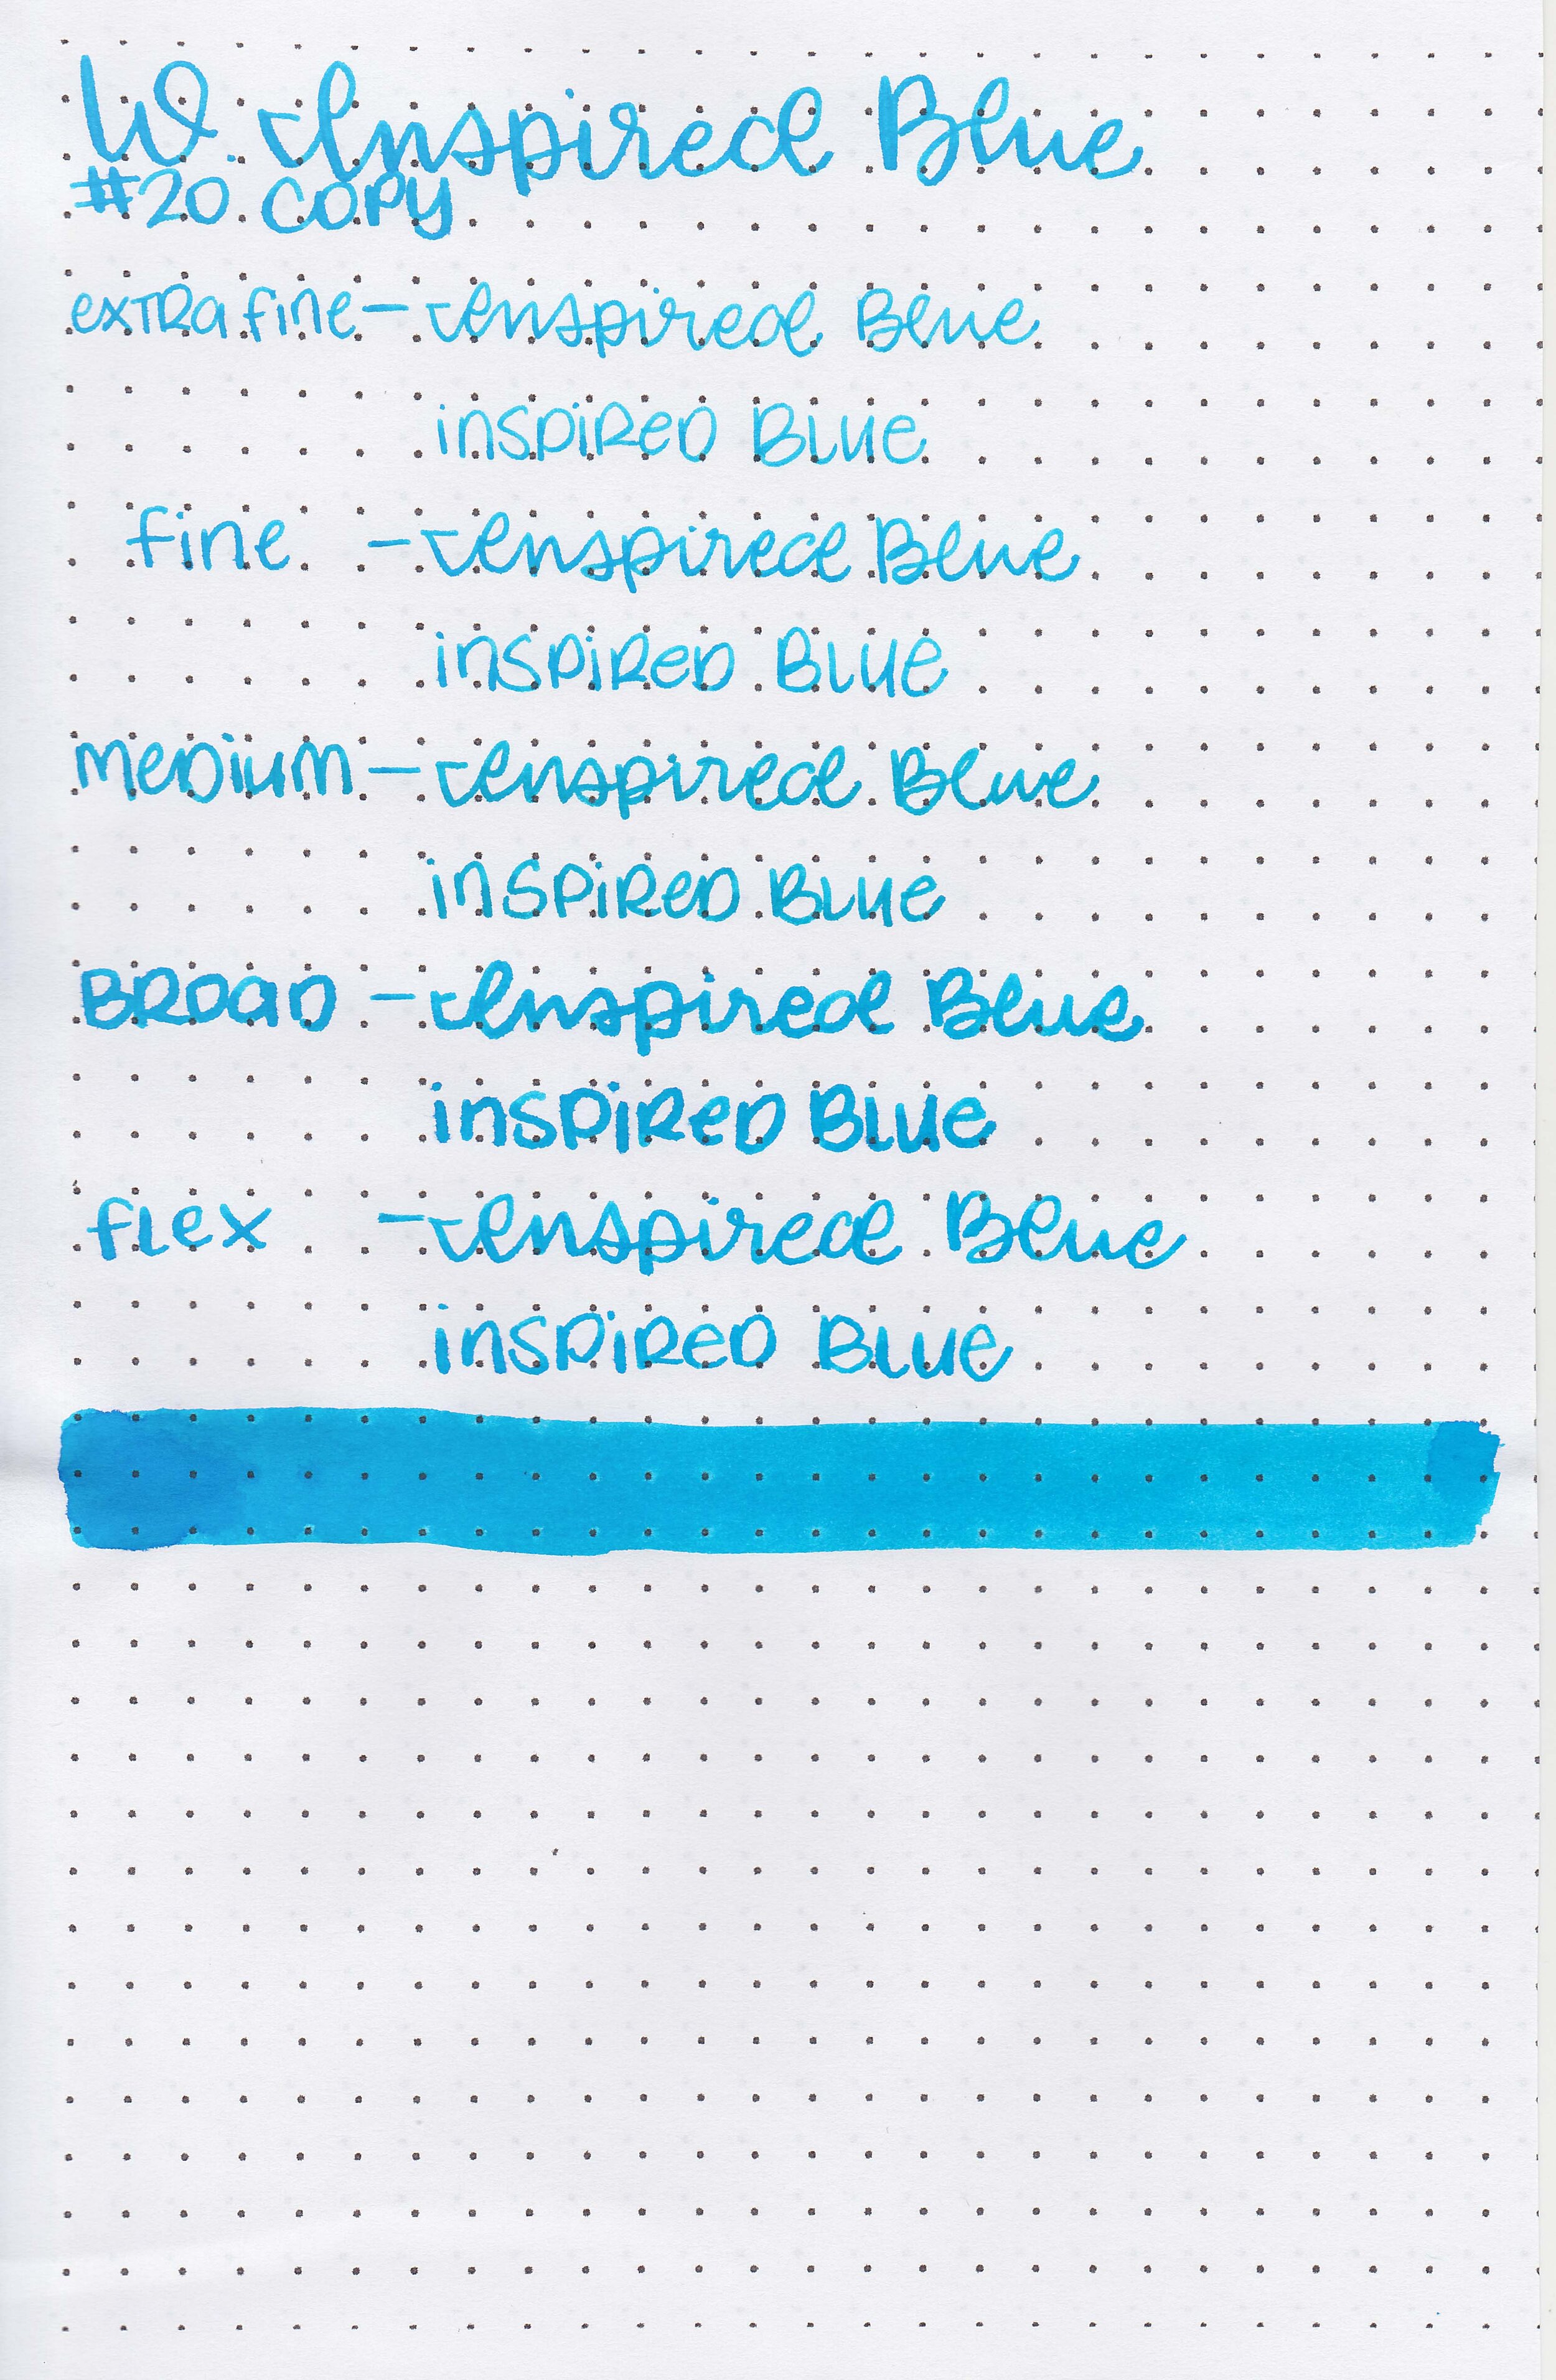 wtr-inspired-blue-10.jpg